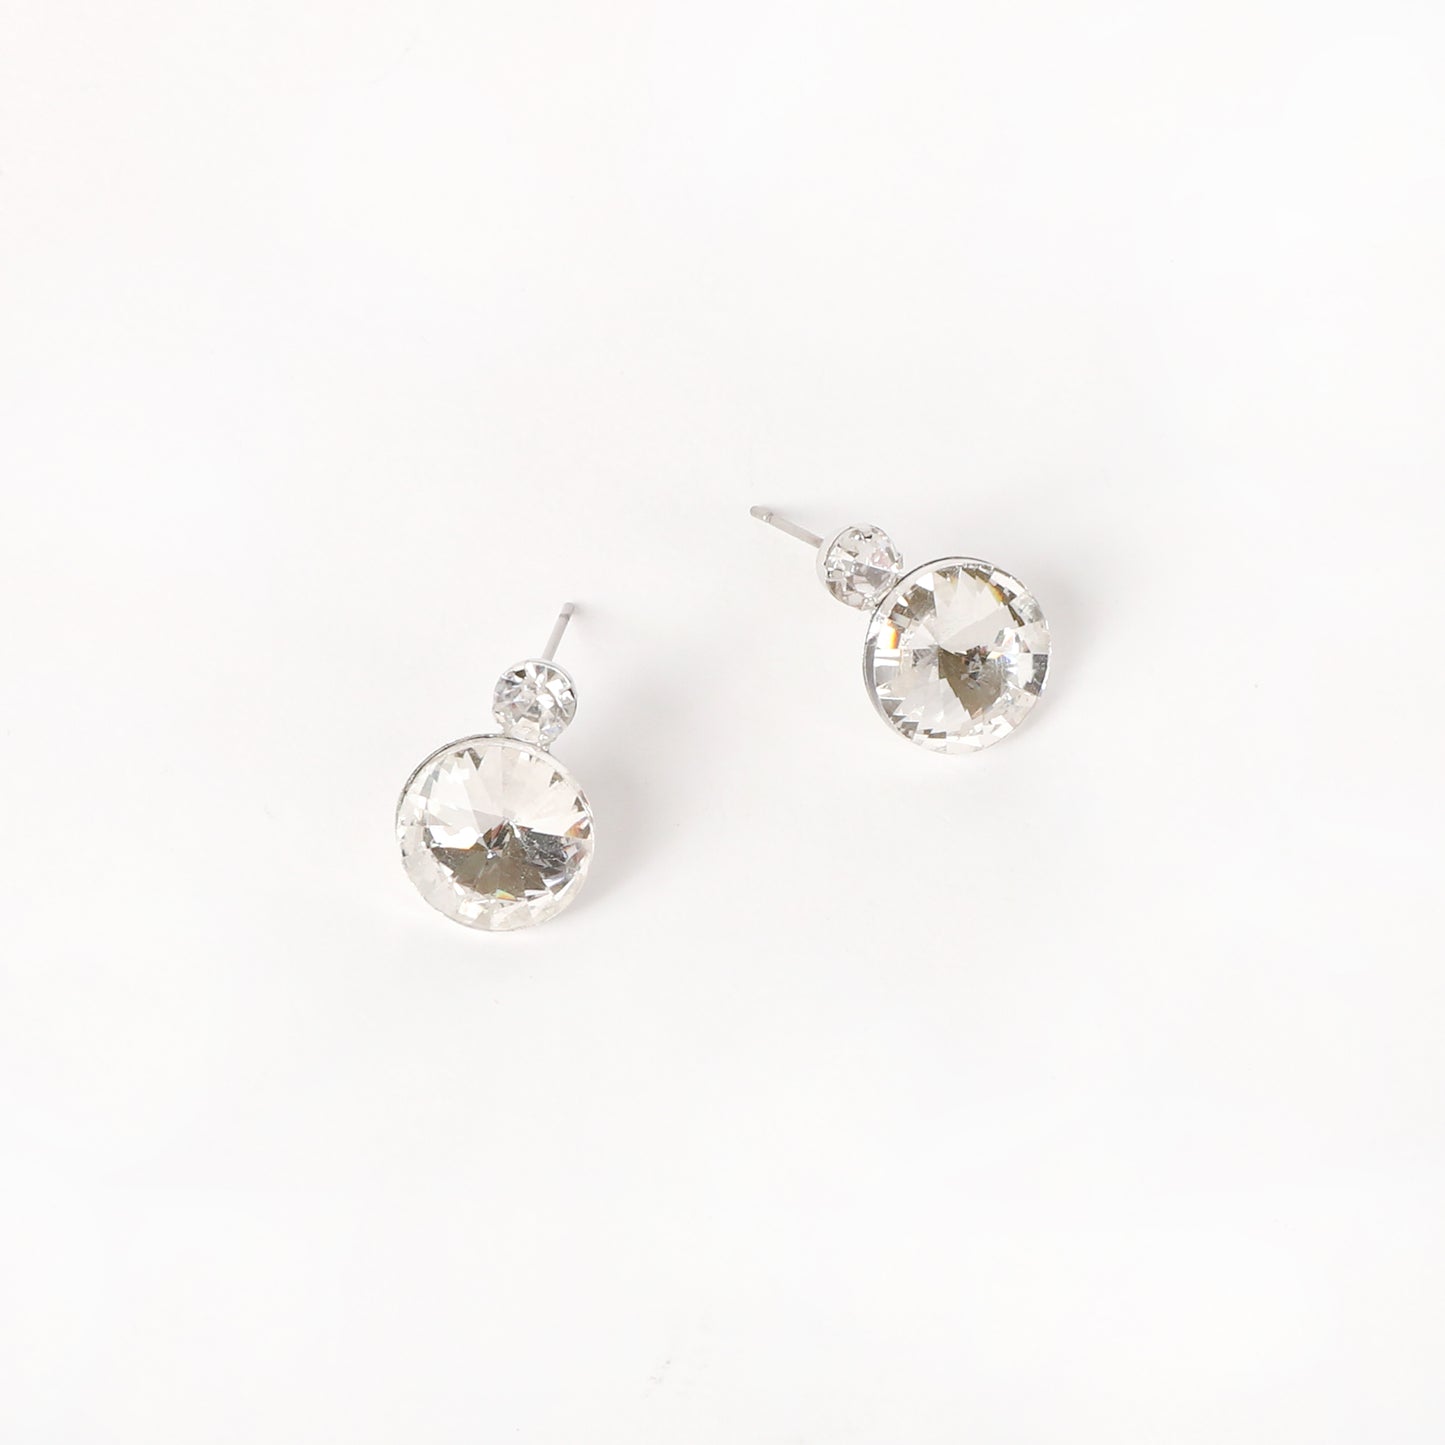 Ramona Teardrop Geometric Necklace & Earring Set - Silver